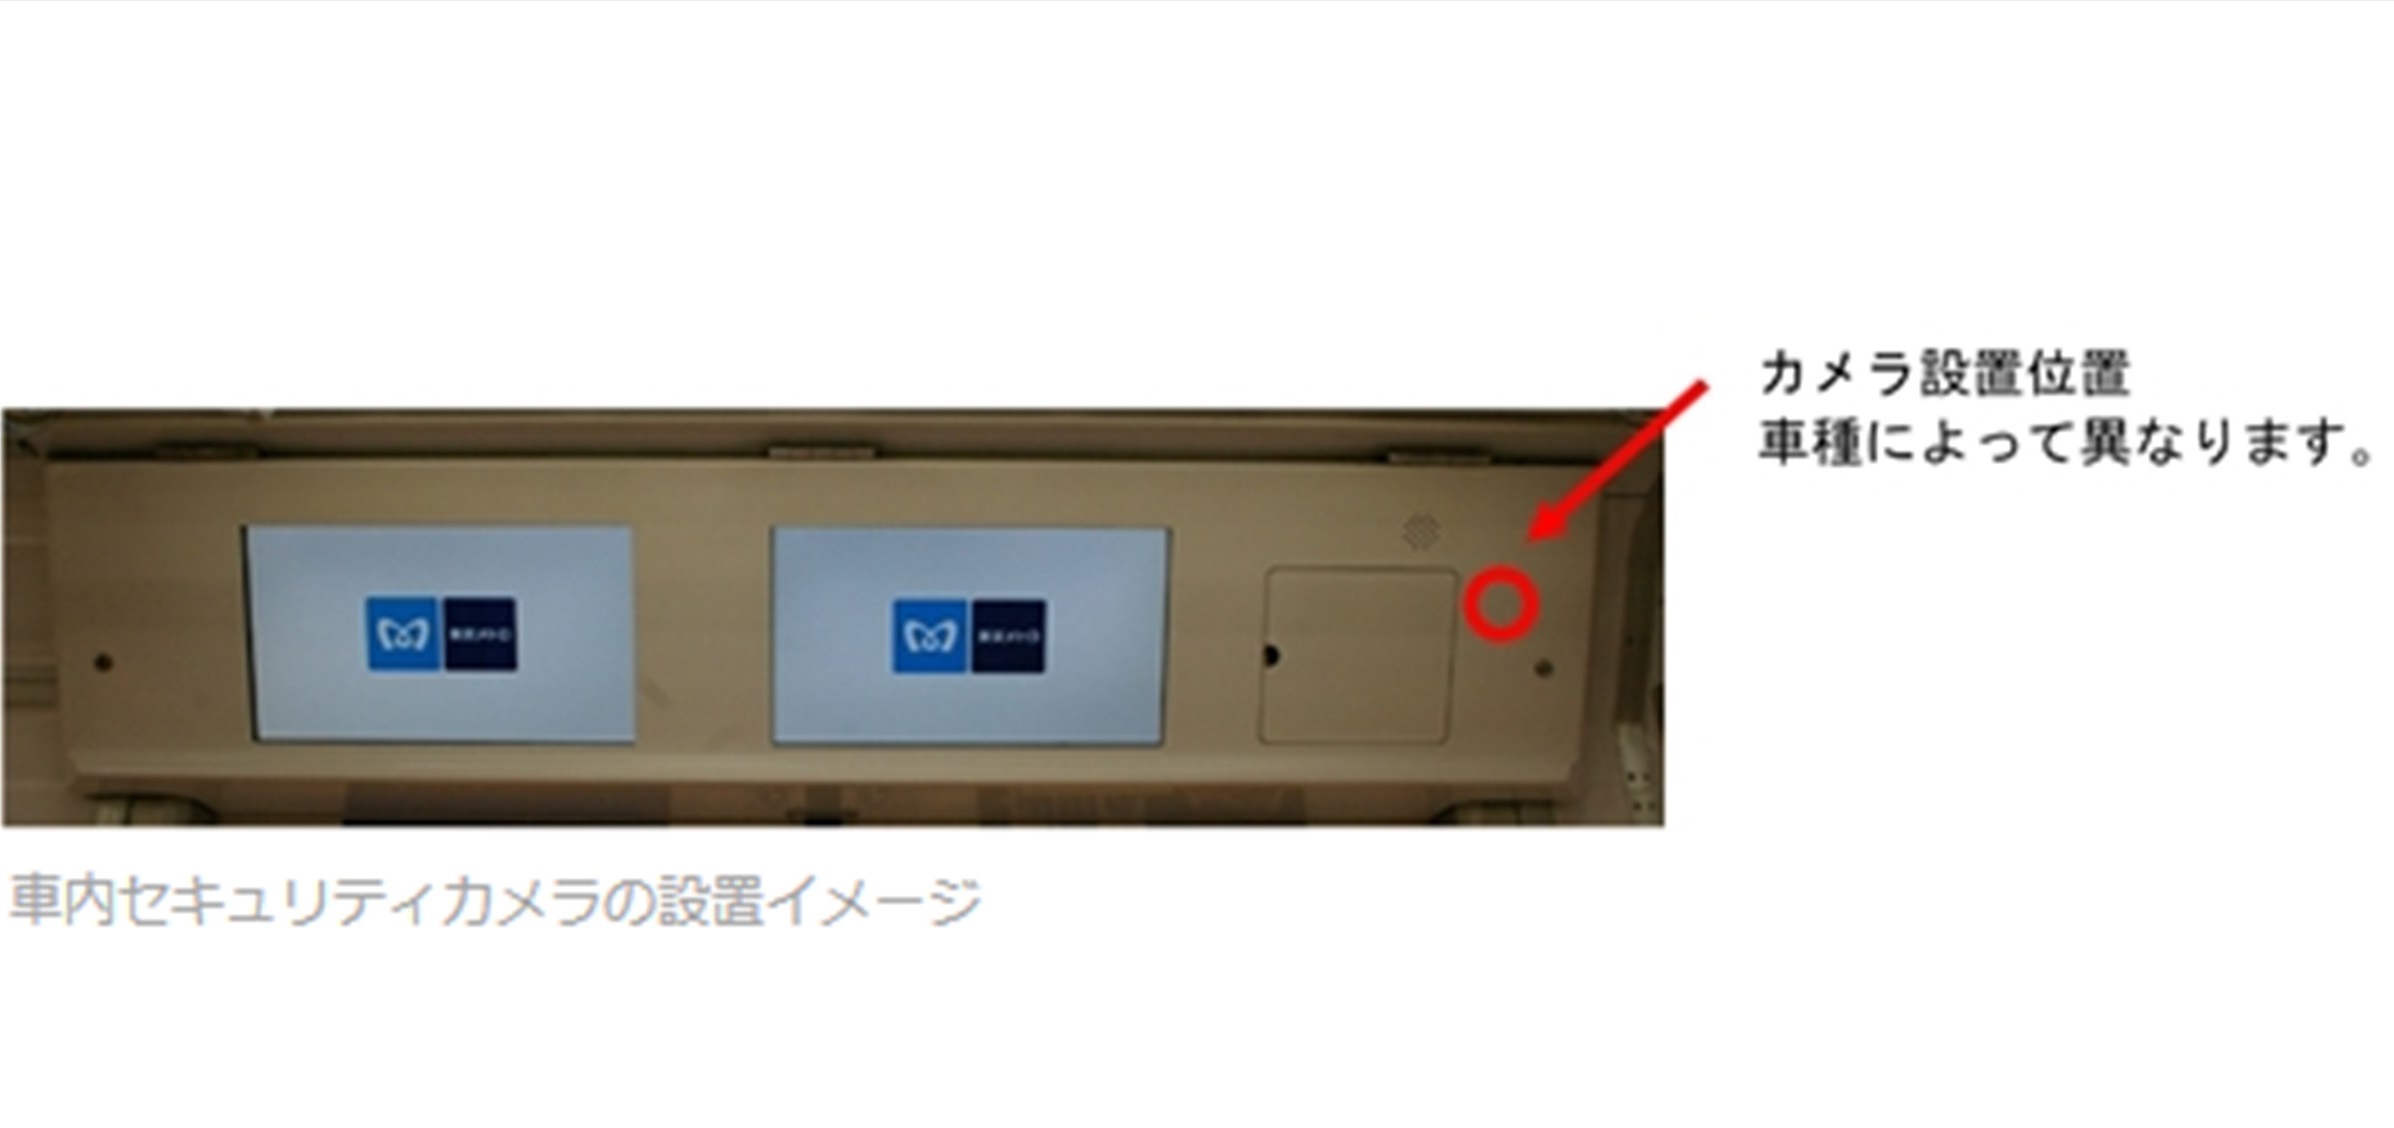 東京メトロ 全車両のへセキュリティカメラの導入へ 乗降ドアの上部に設置 デザインってオモシロイ Mdn Design Interactive